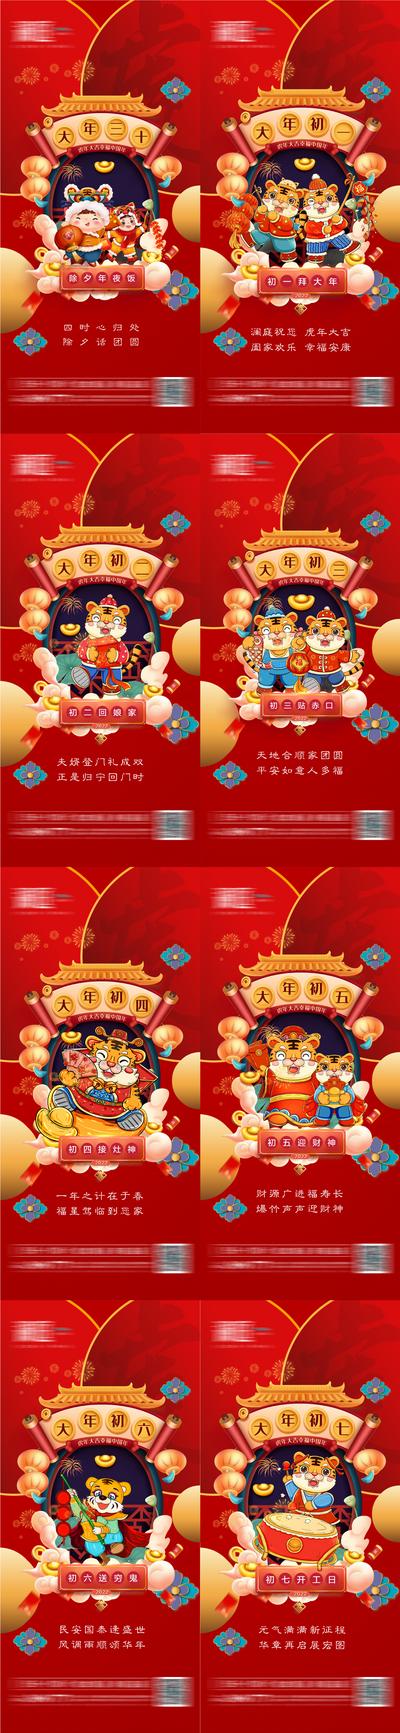 南门网 春节除夕初一至初七宣传节日海报